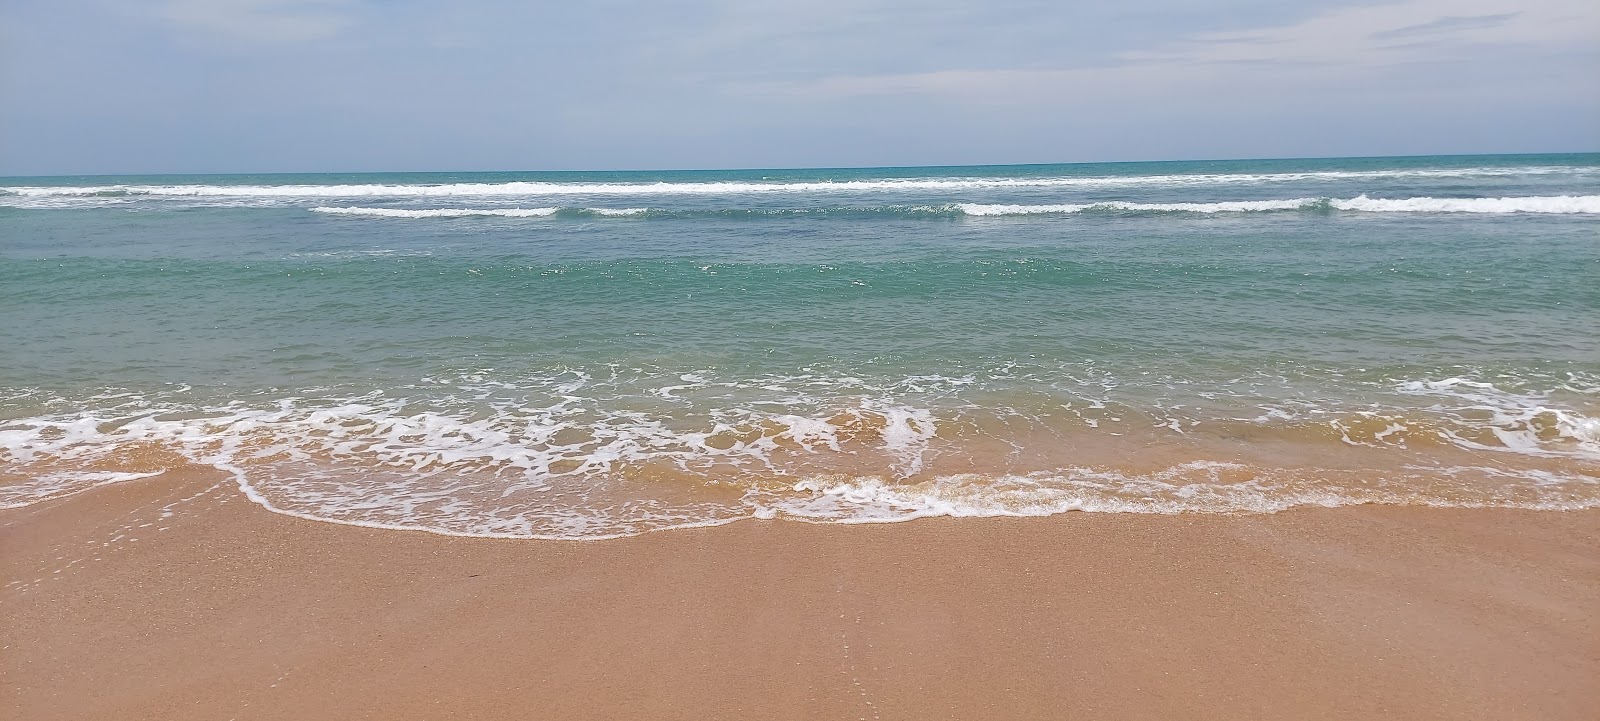 Foto av Kooduthalai beach med turkos rent vatten yta